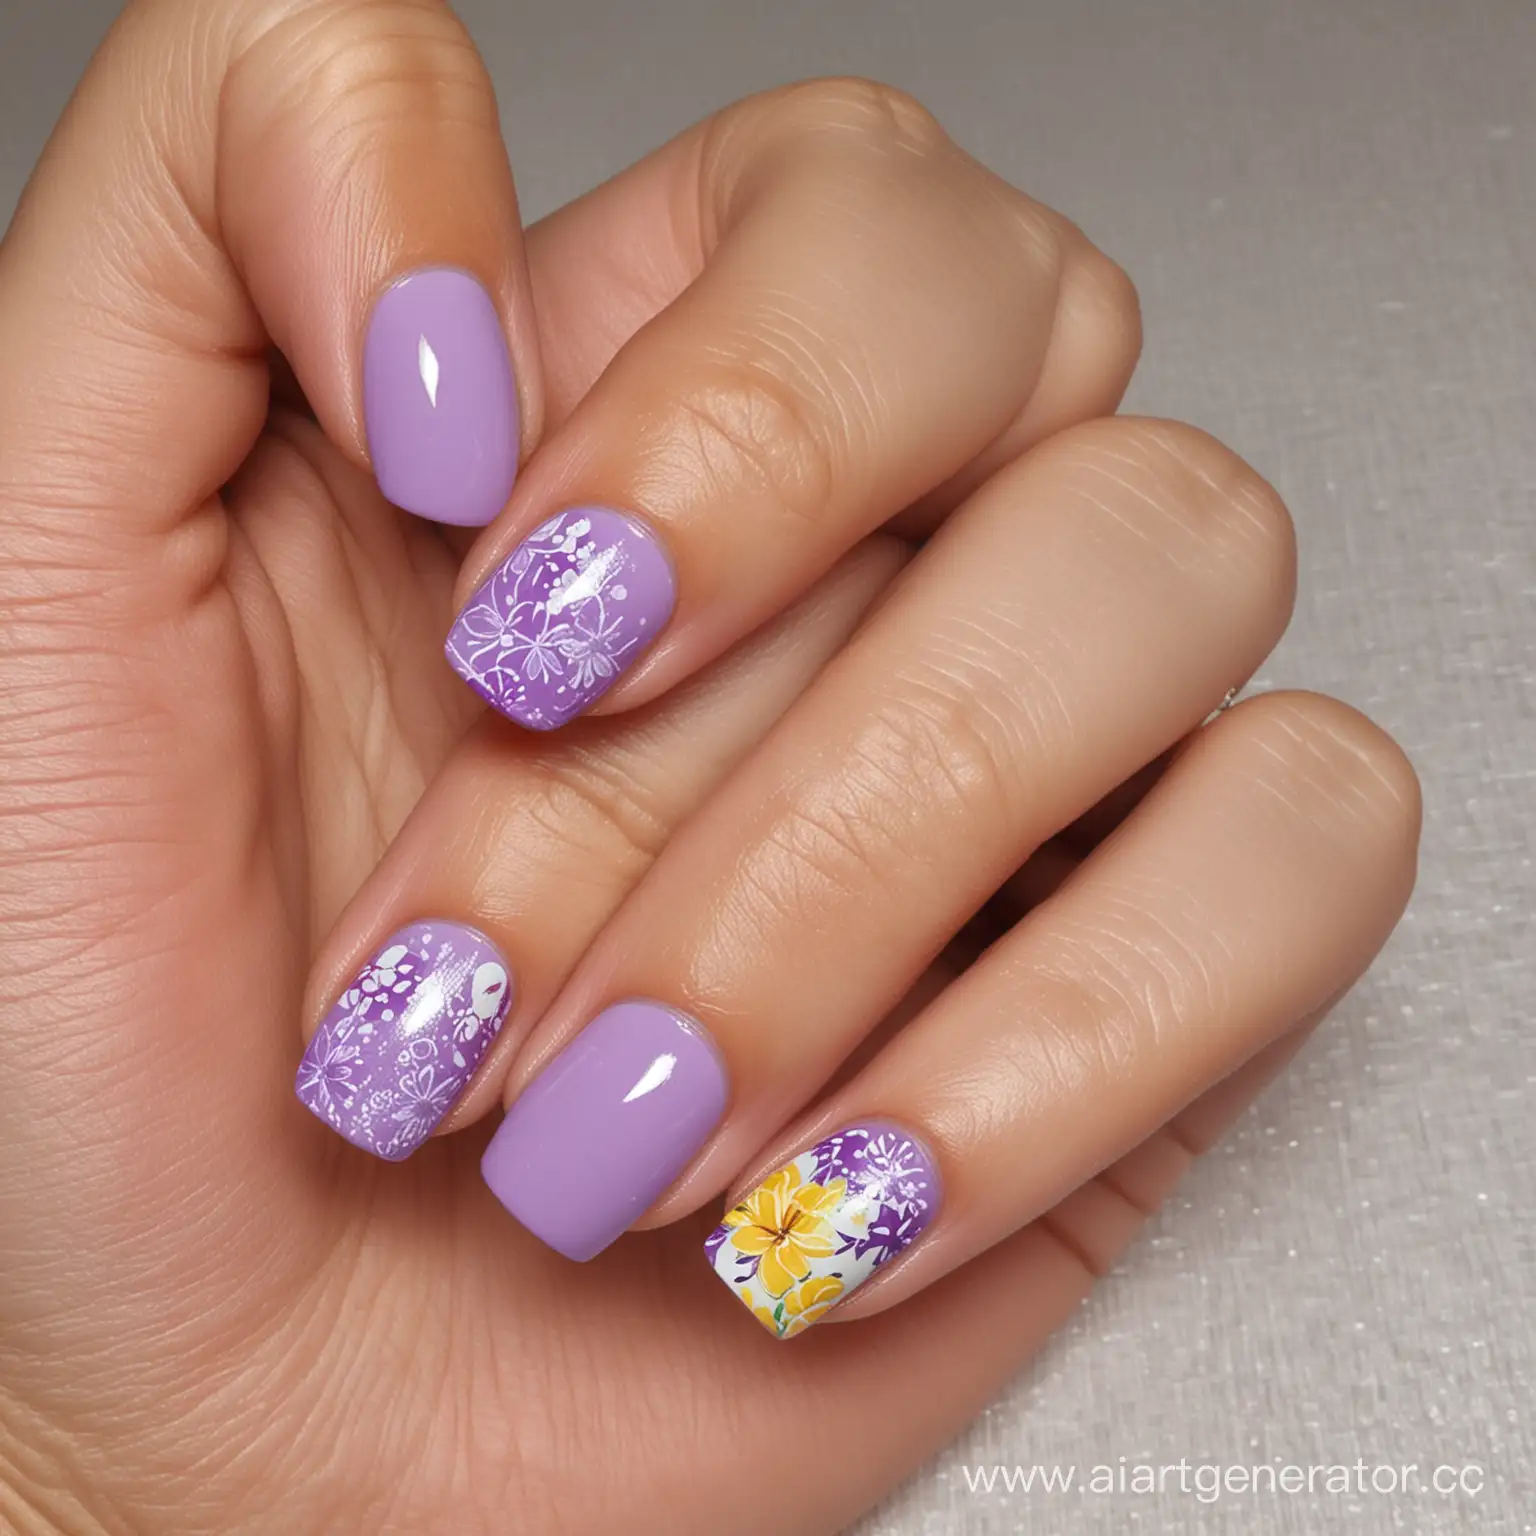 Дизайн ногтей, летнее настроение, используемые цвета: фиолетовый, белый, сиреневый, желтый